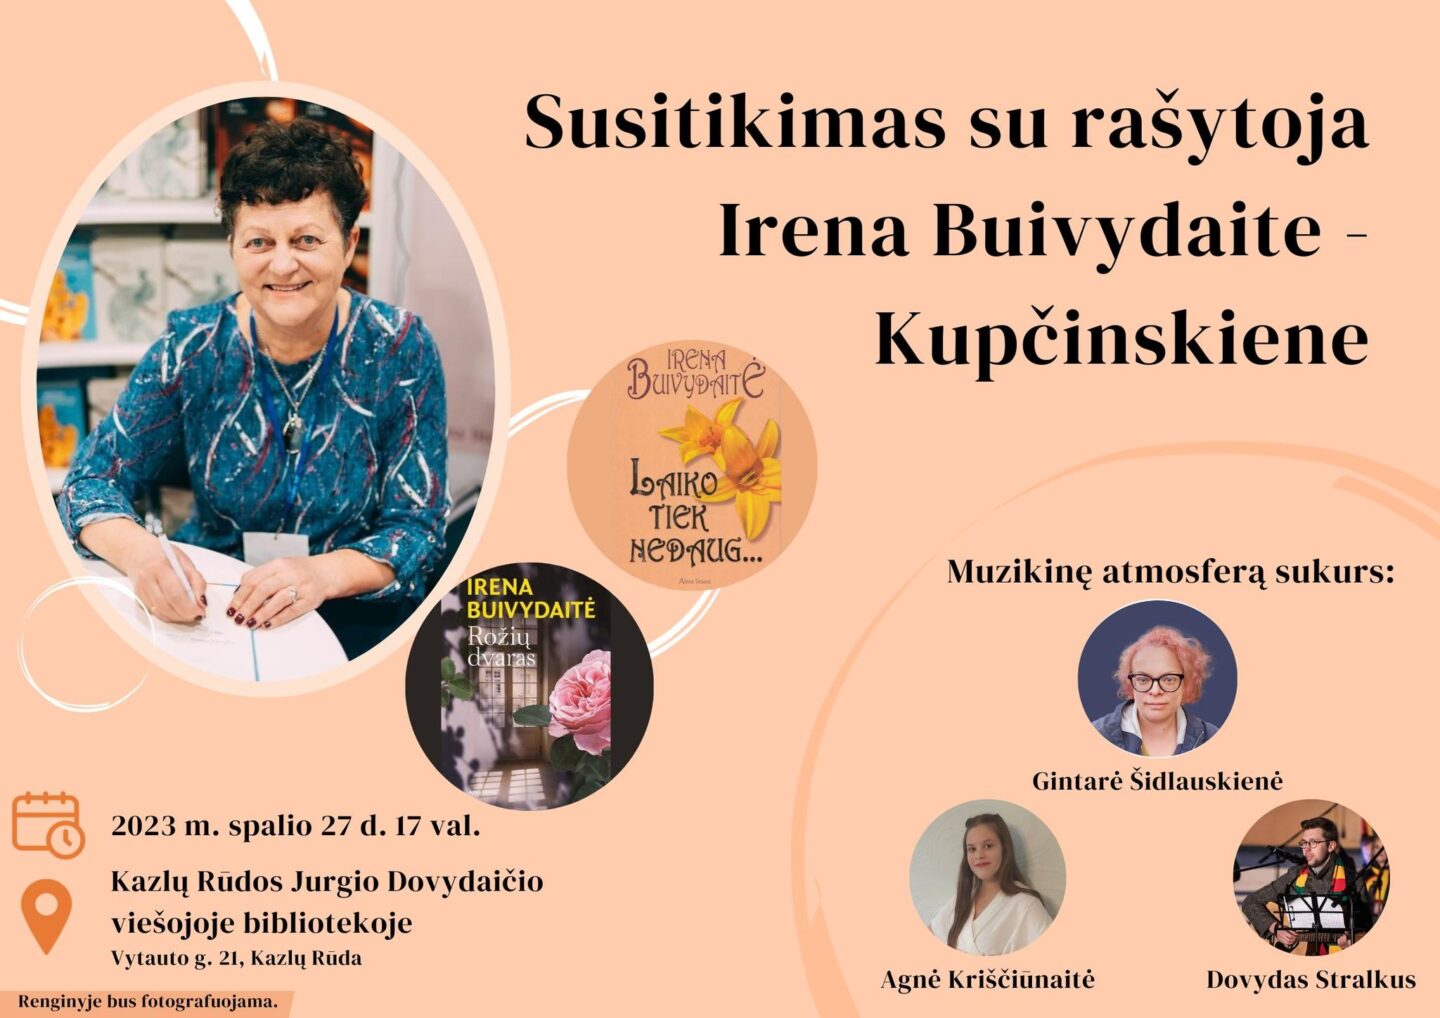 Susitikimas su Irena Buivydaite - Kupčinskiene